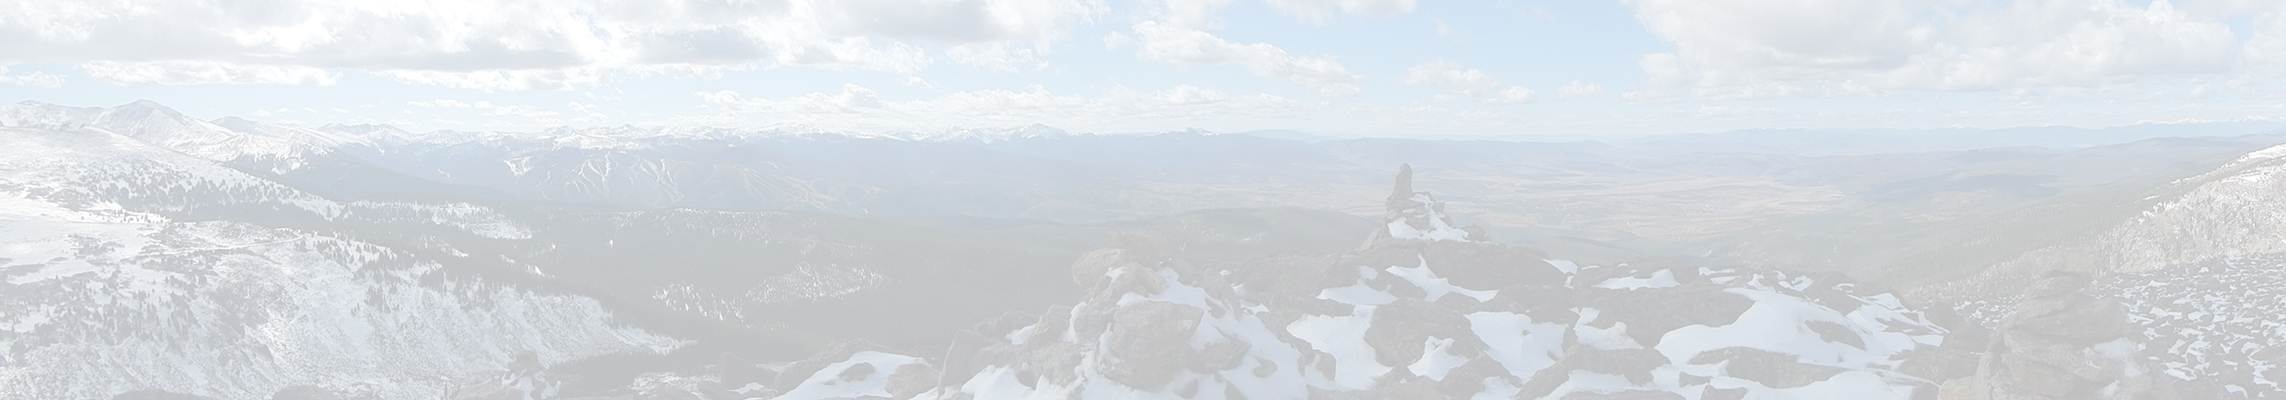 Mount Epworth via Jenny Lake / Needle Eye Tunnel – Trip Report